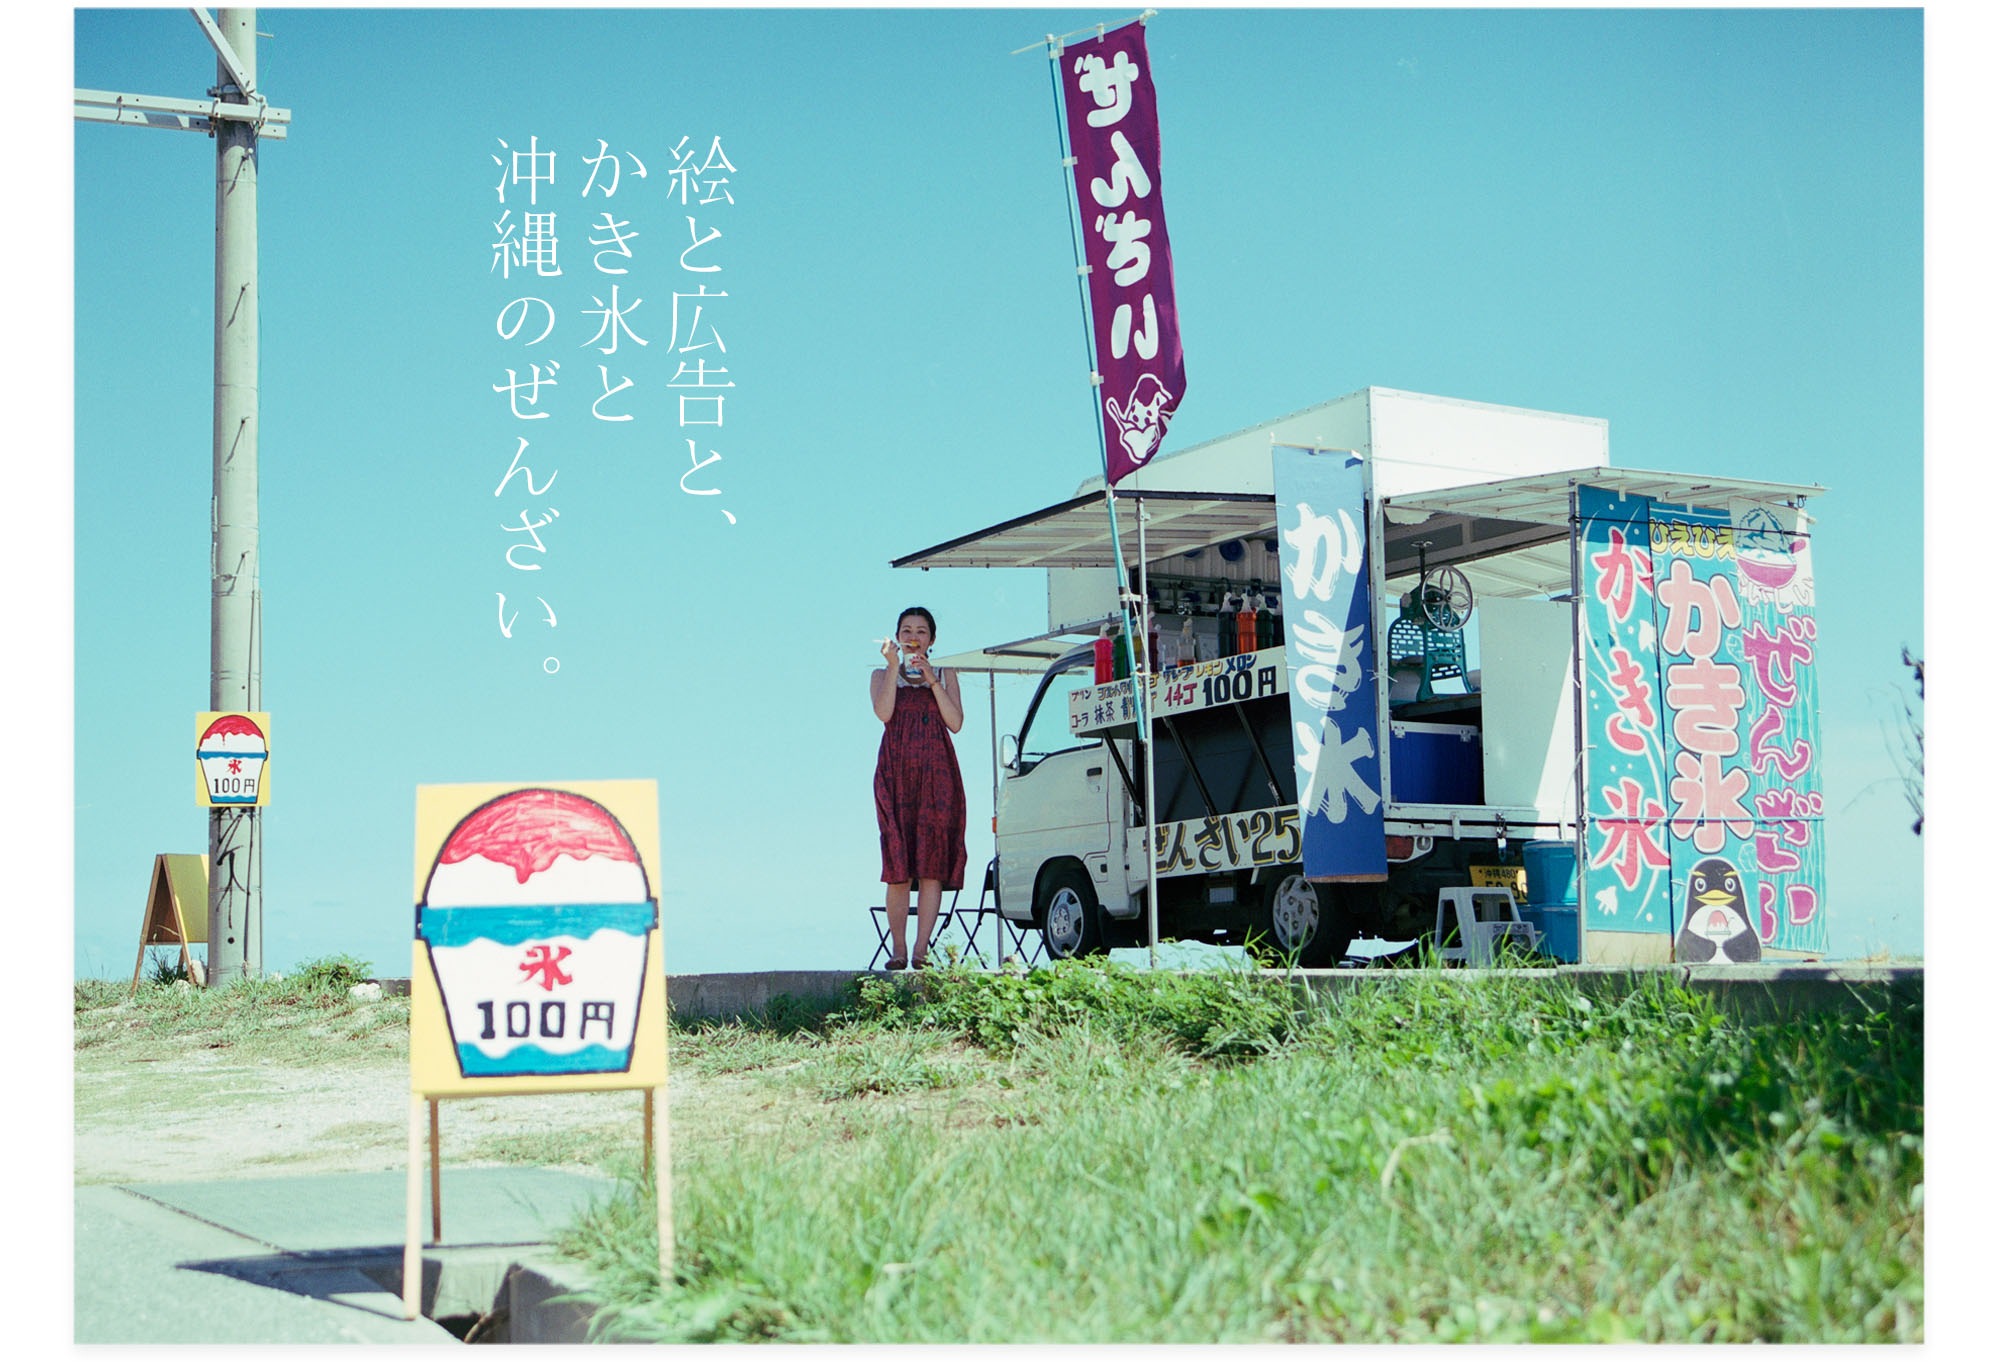 201301007_絵と広告とかき氷と沖縄のぜんざい